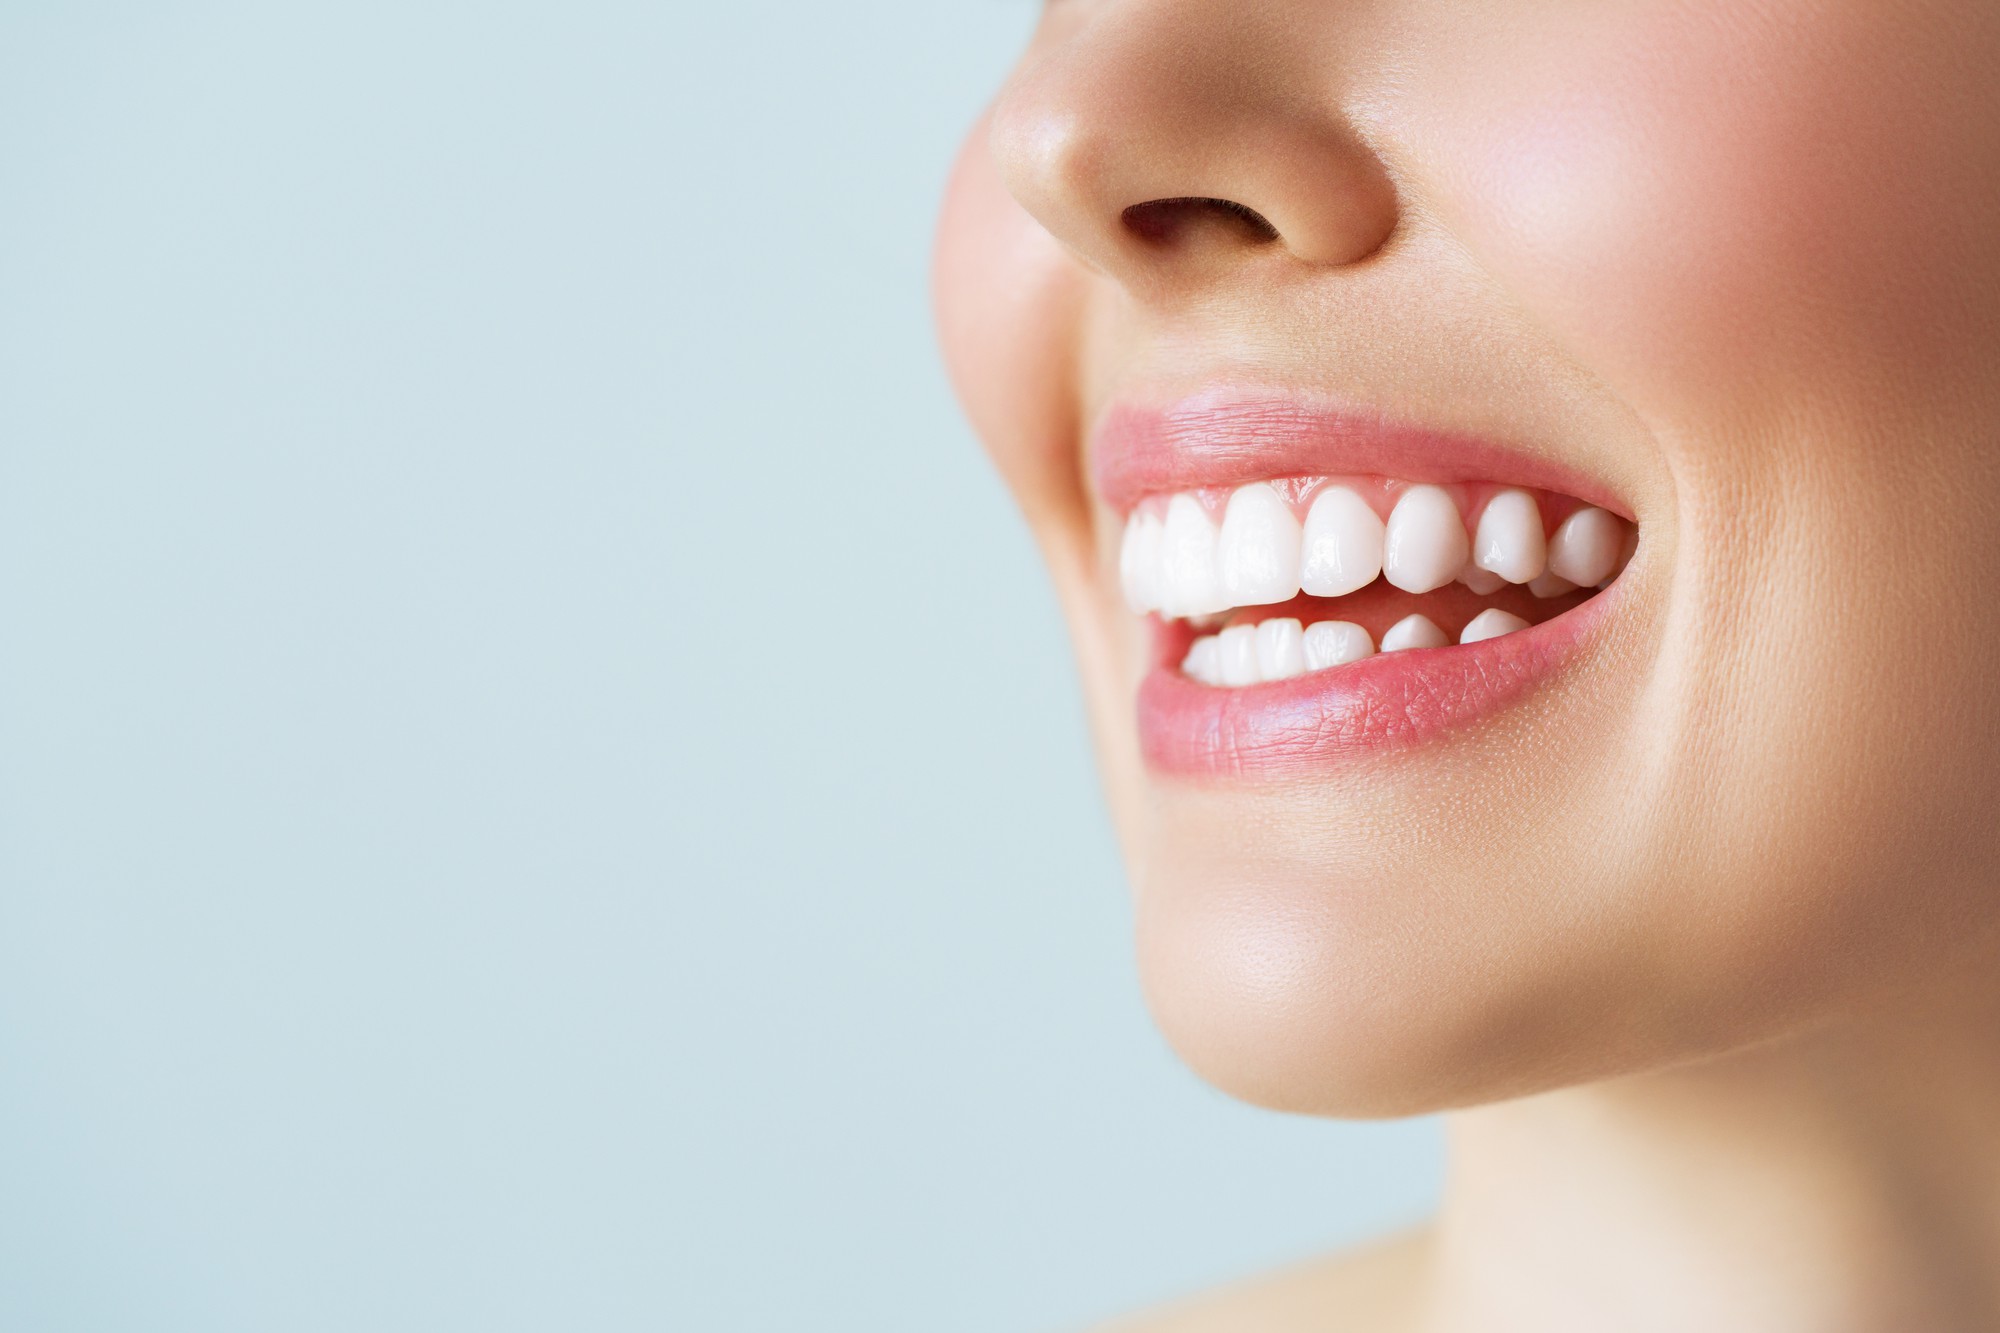 مزایا و معایب کامپوزیت دندان